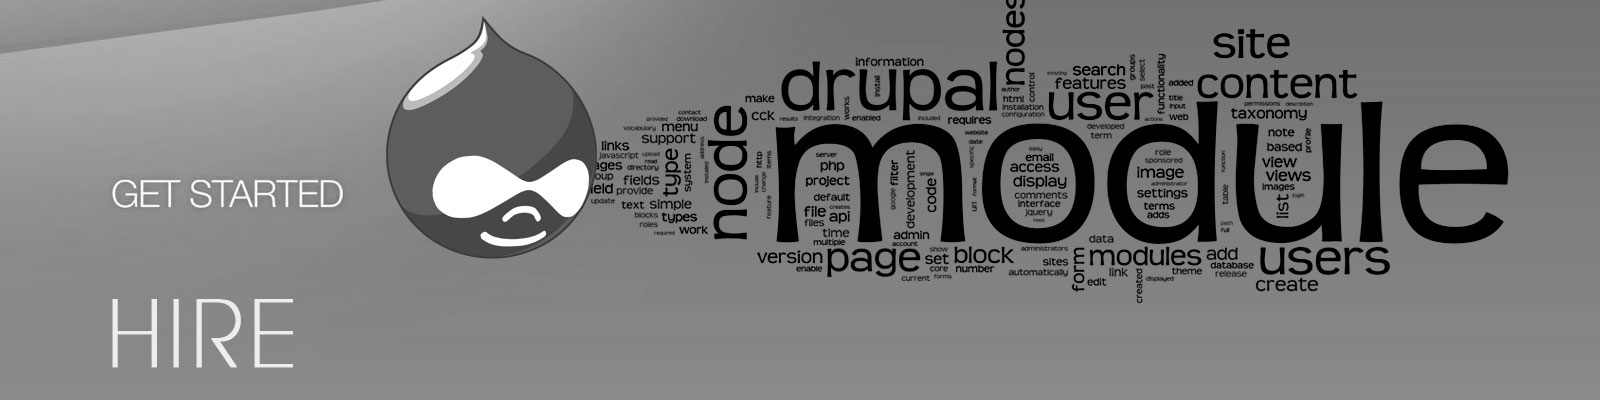 hire drupal application developer